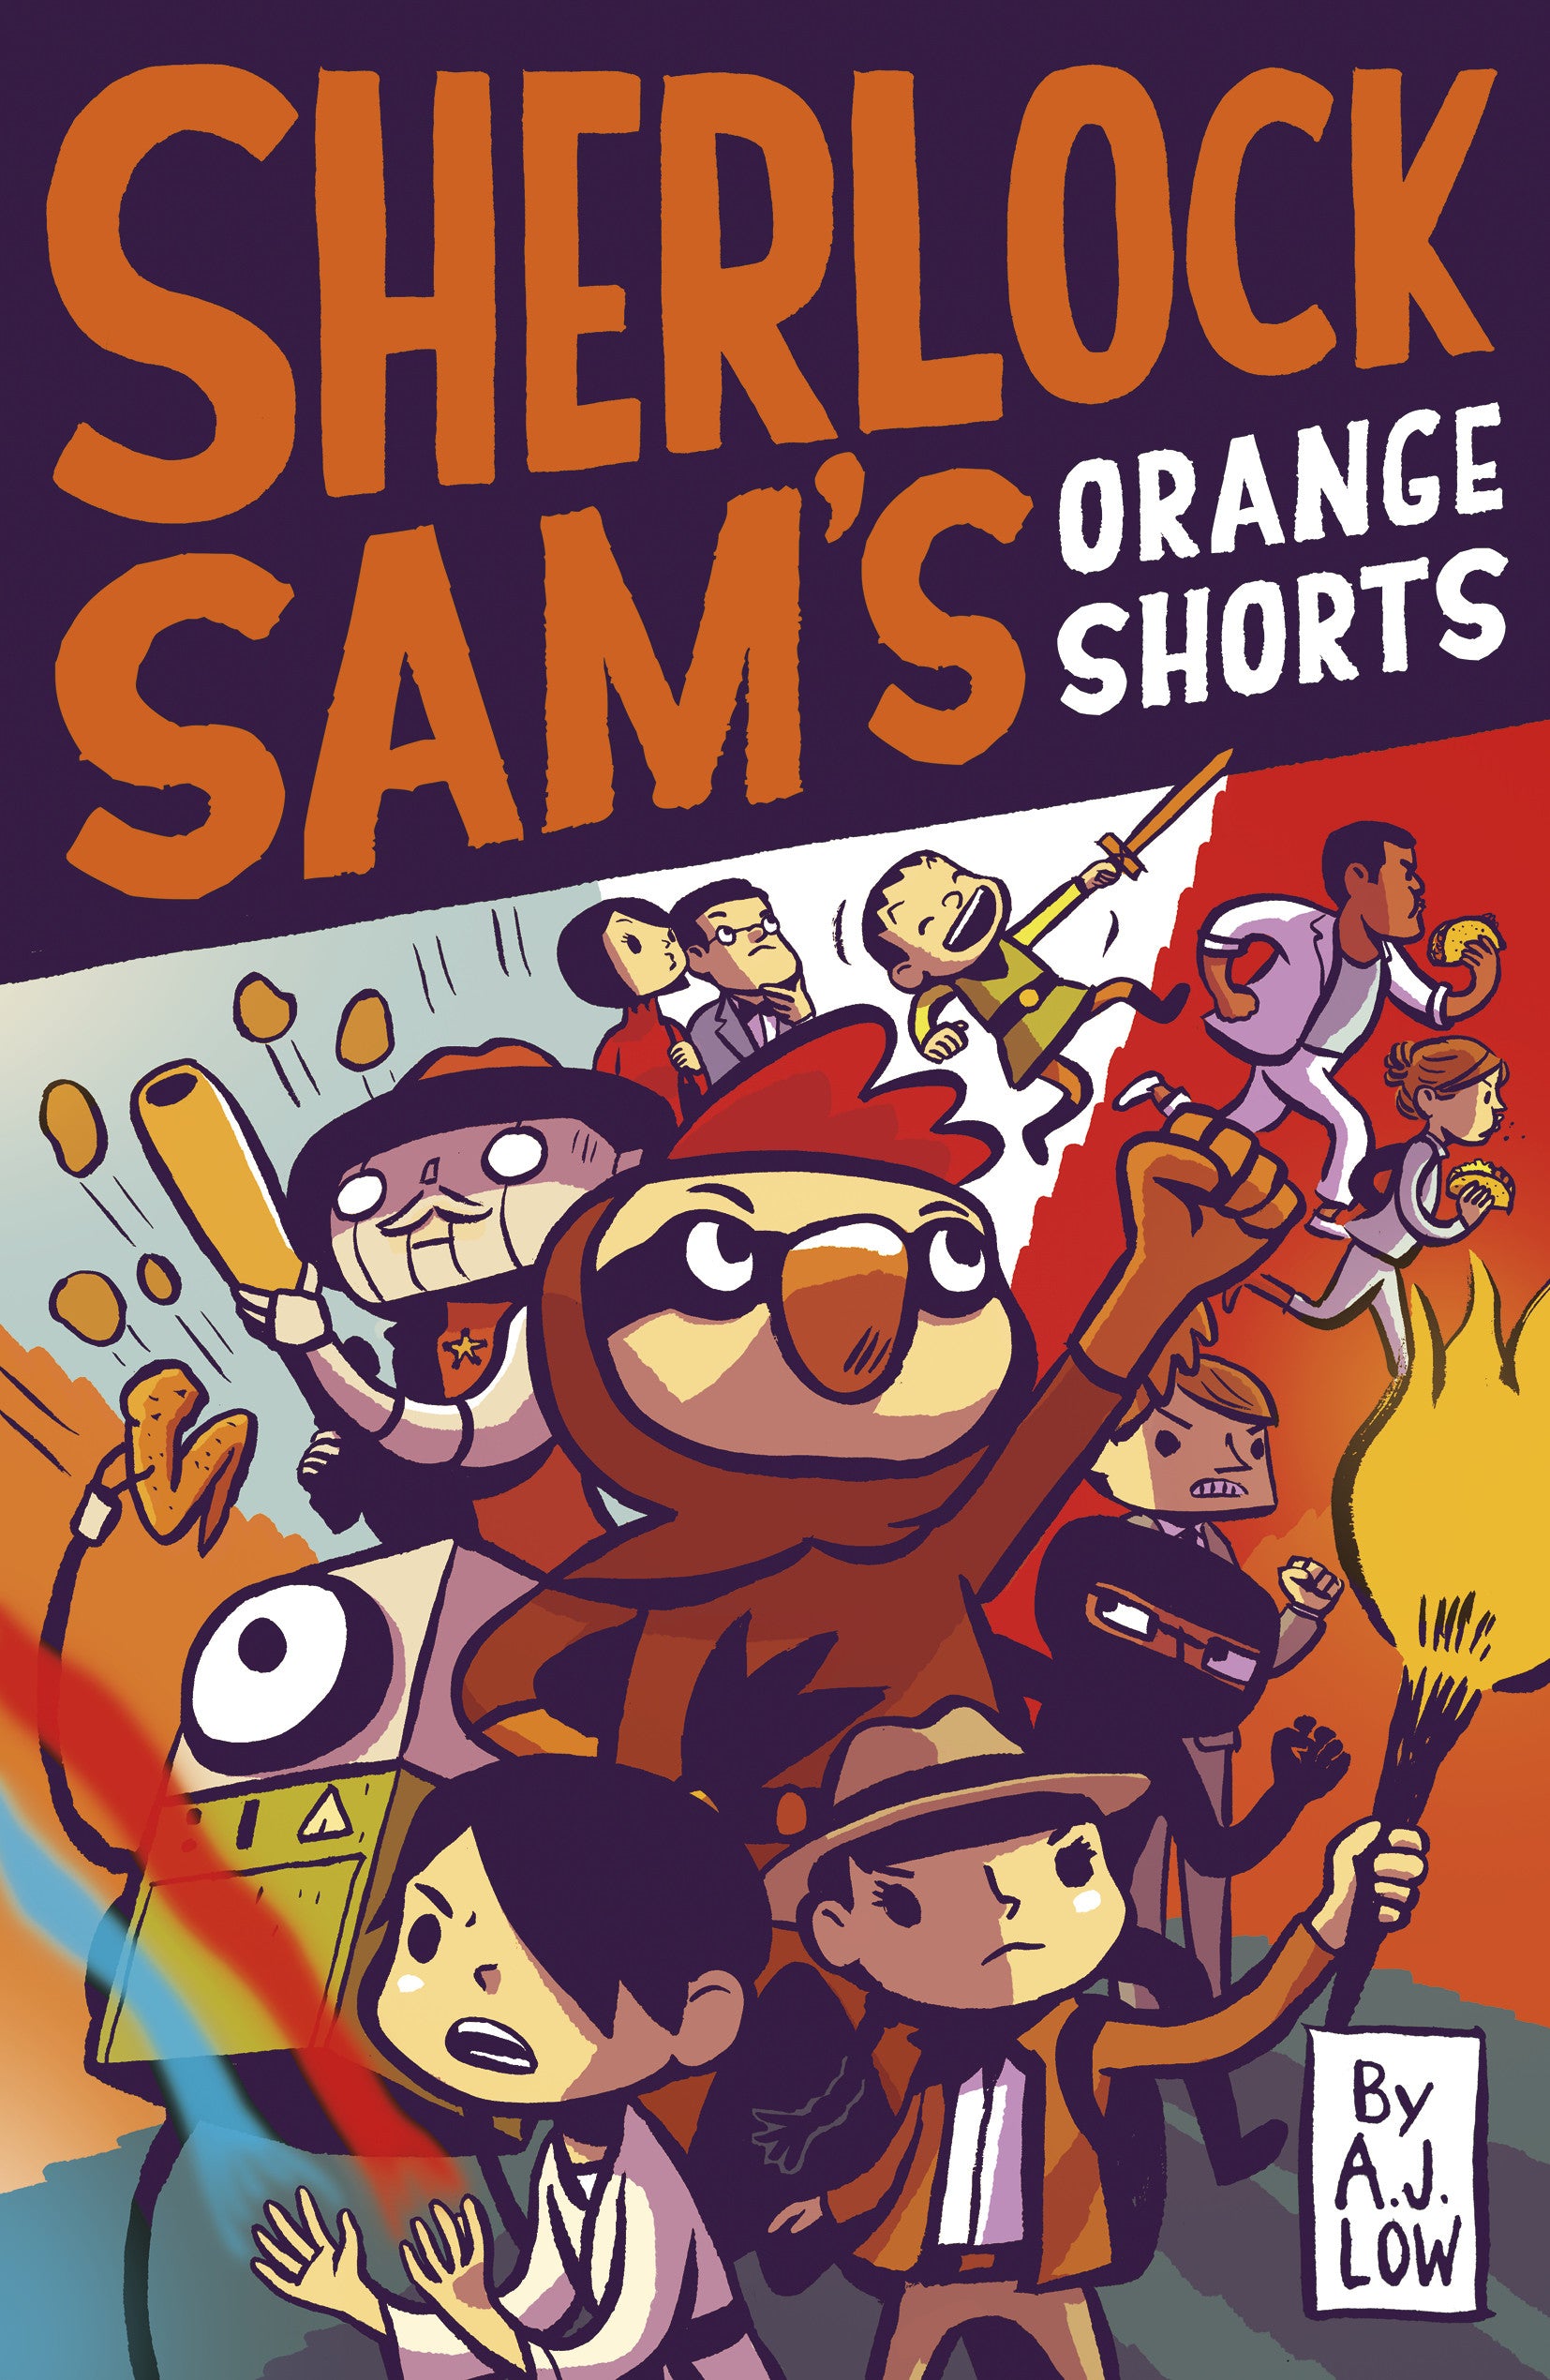 Sherlock Sam’s Orange Shorts (Book 11.5)